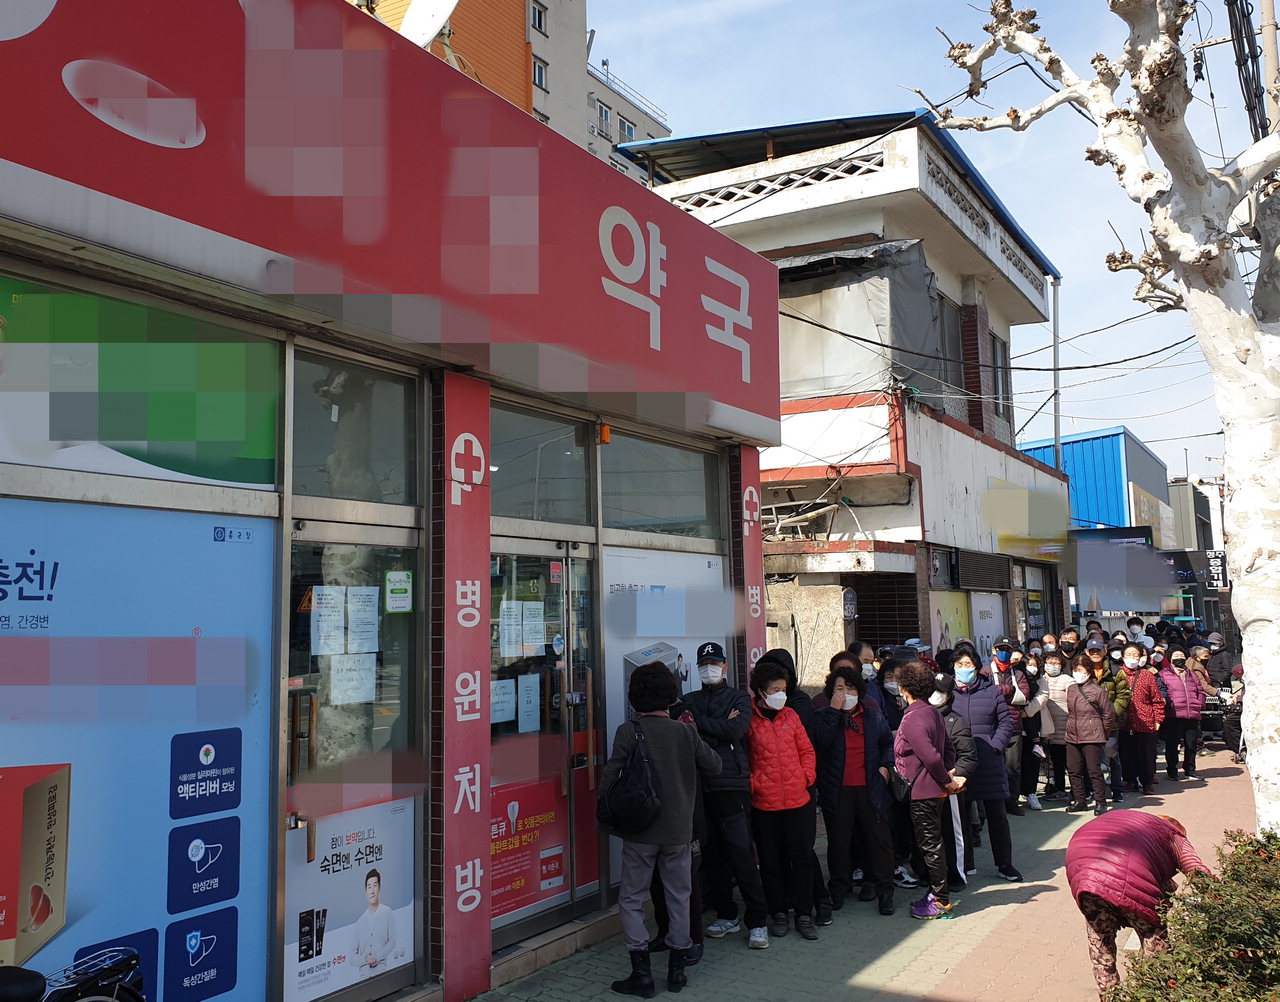 8일 오후 1시 청주 사직동에 위치한 한 약국 앞에서 마스크를 사기 위해 모인 인파가 줄을 잇고 있다. / 안성수